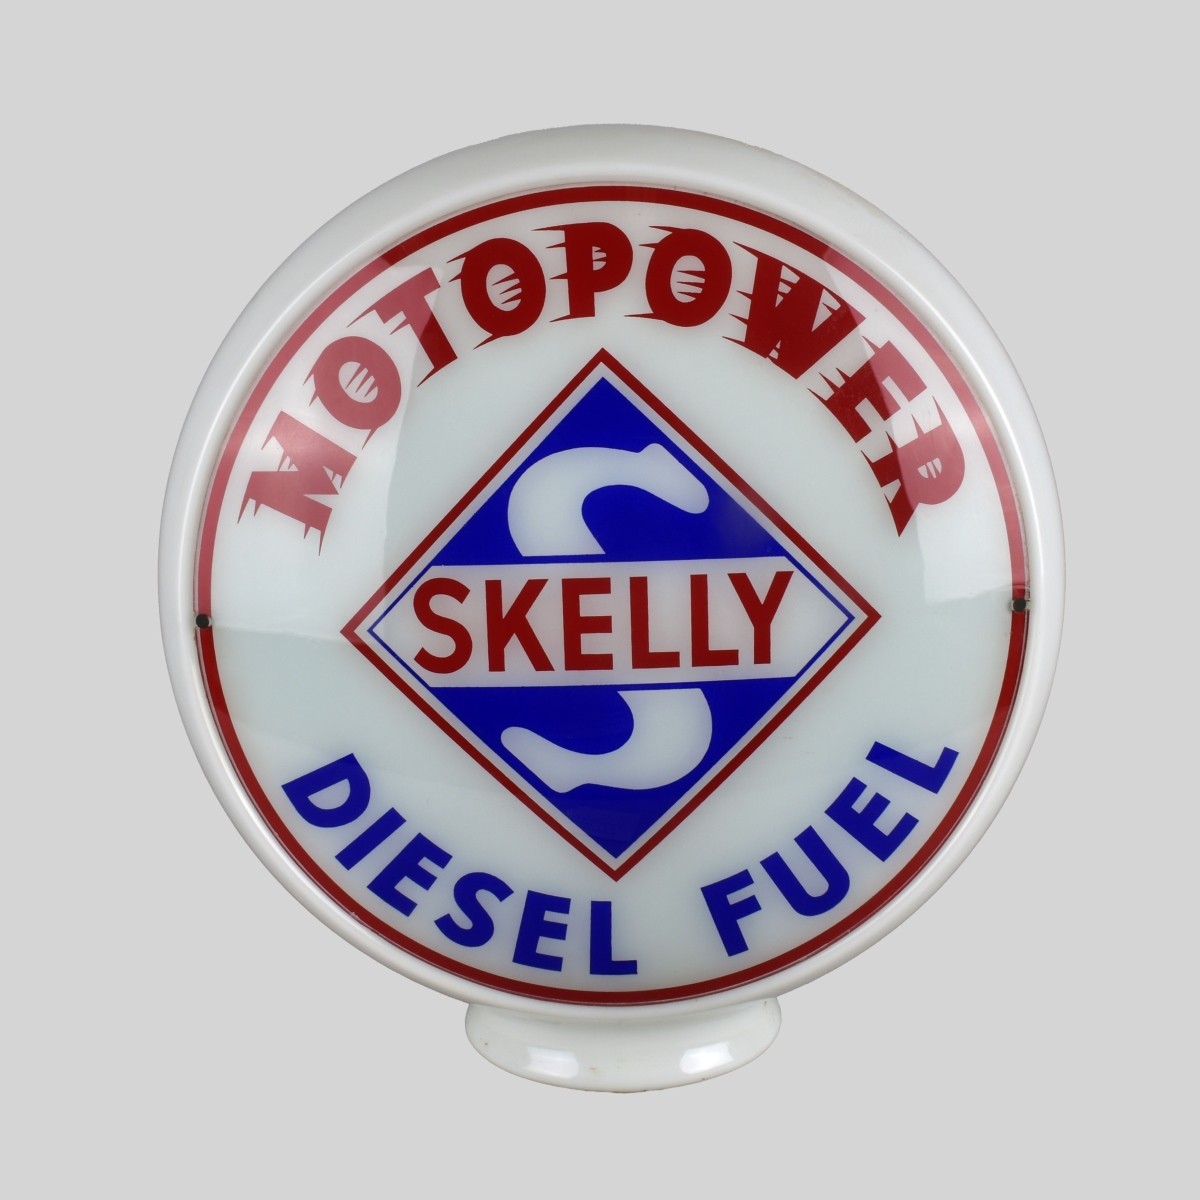 Vintage Skelly Diesel Fuel Advertising Globe